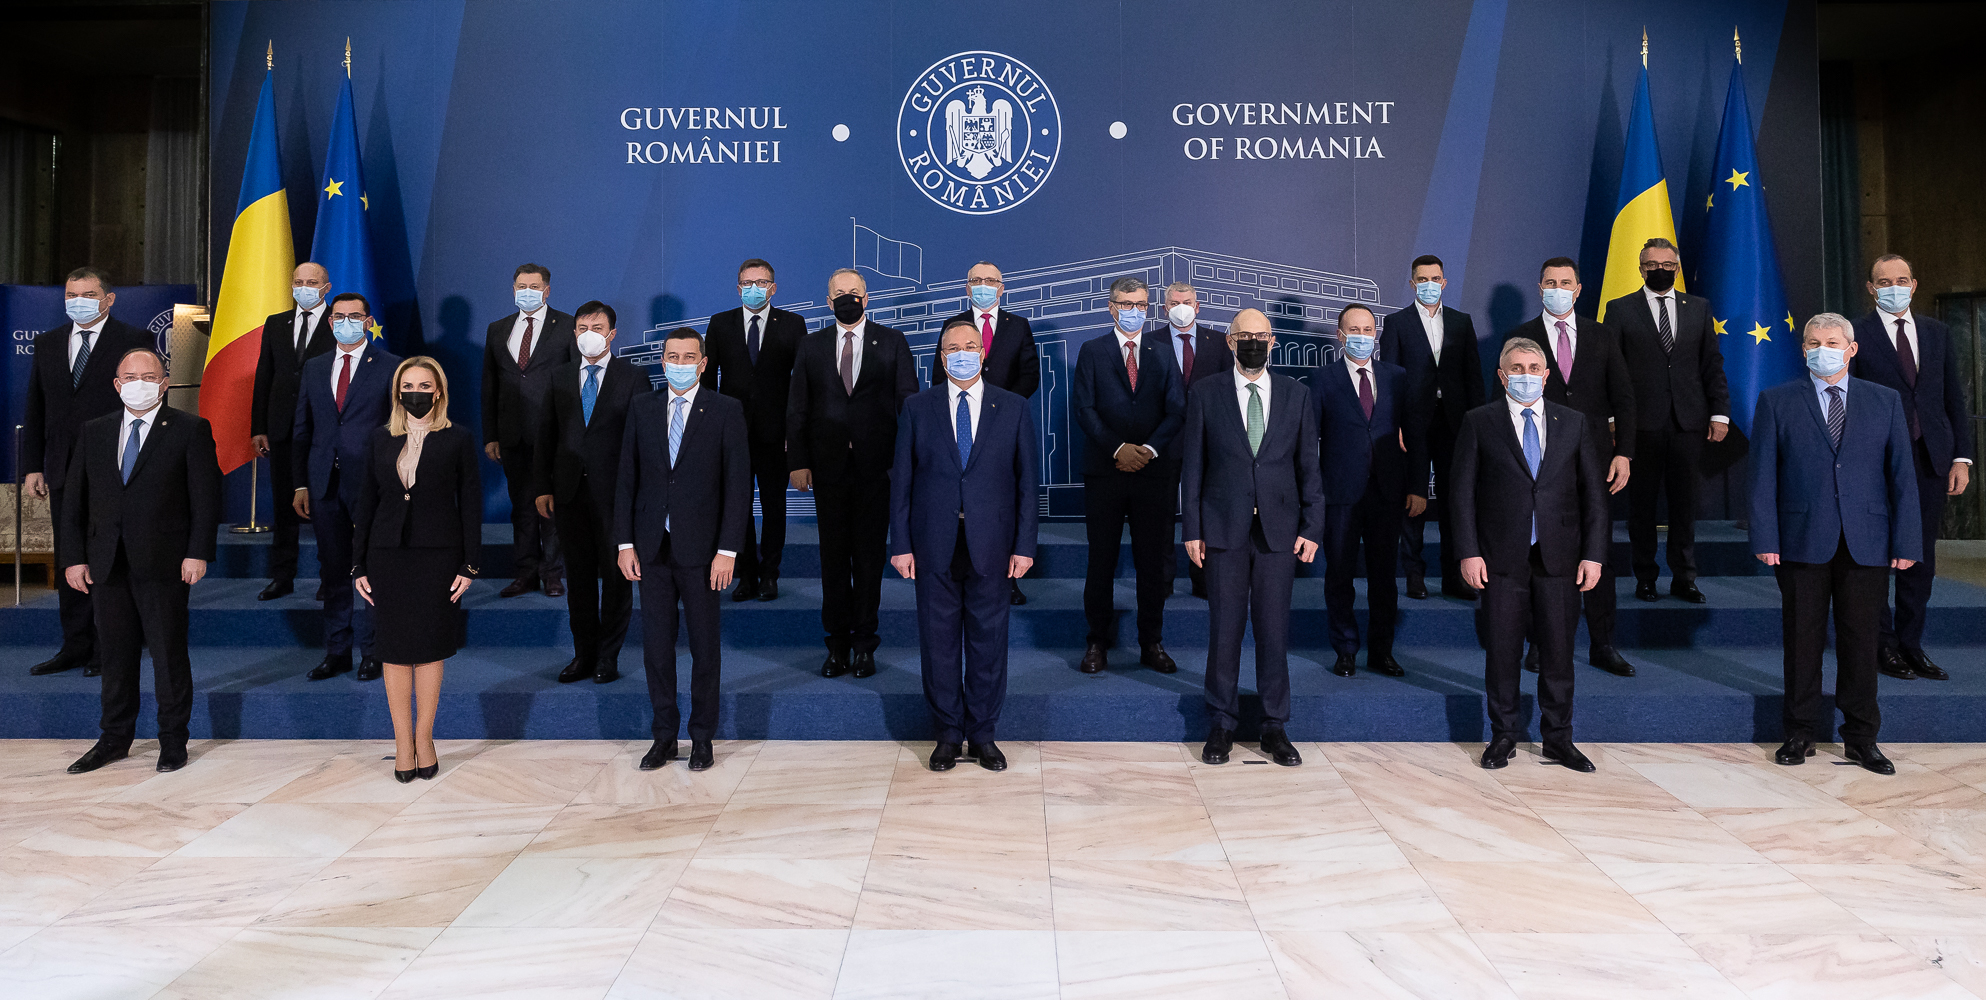 Portofoliul de miniștri din Guvernul Ciucă